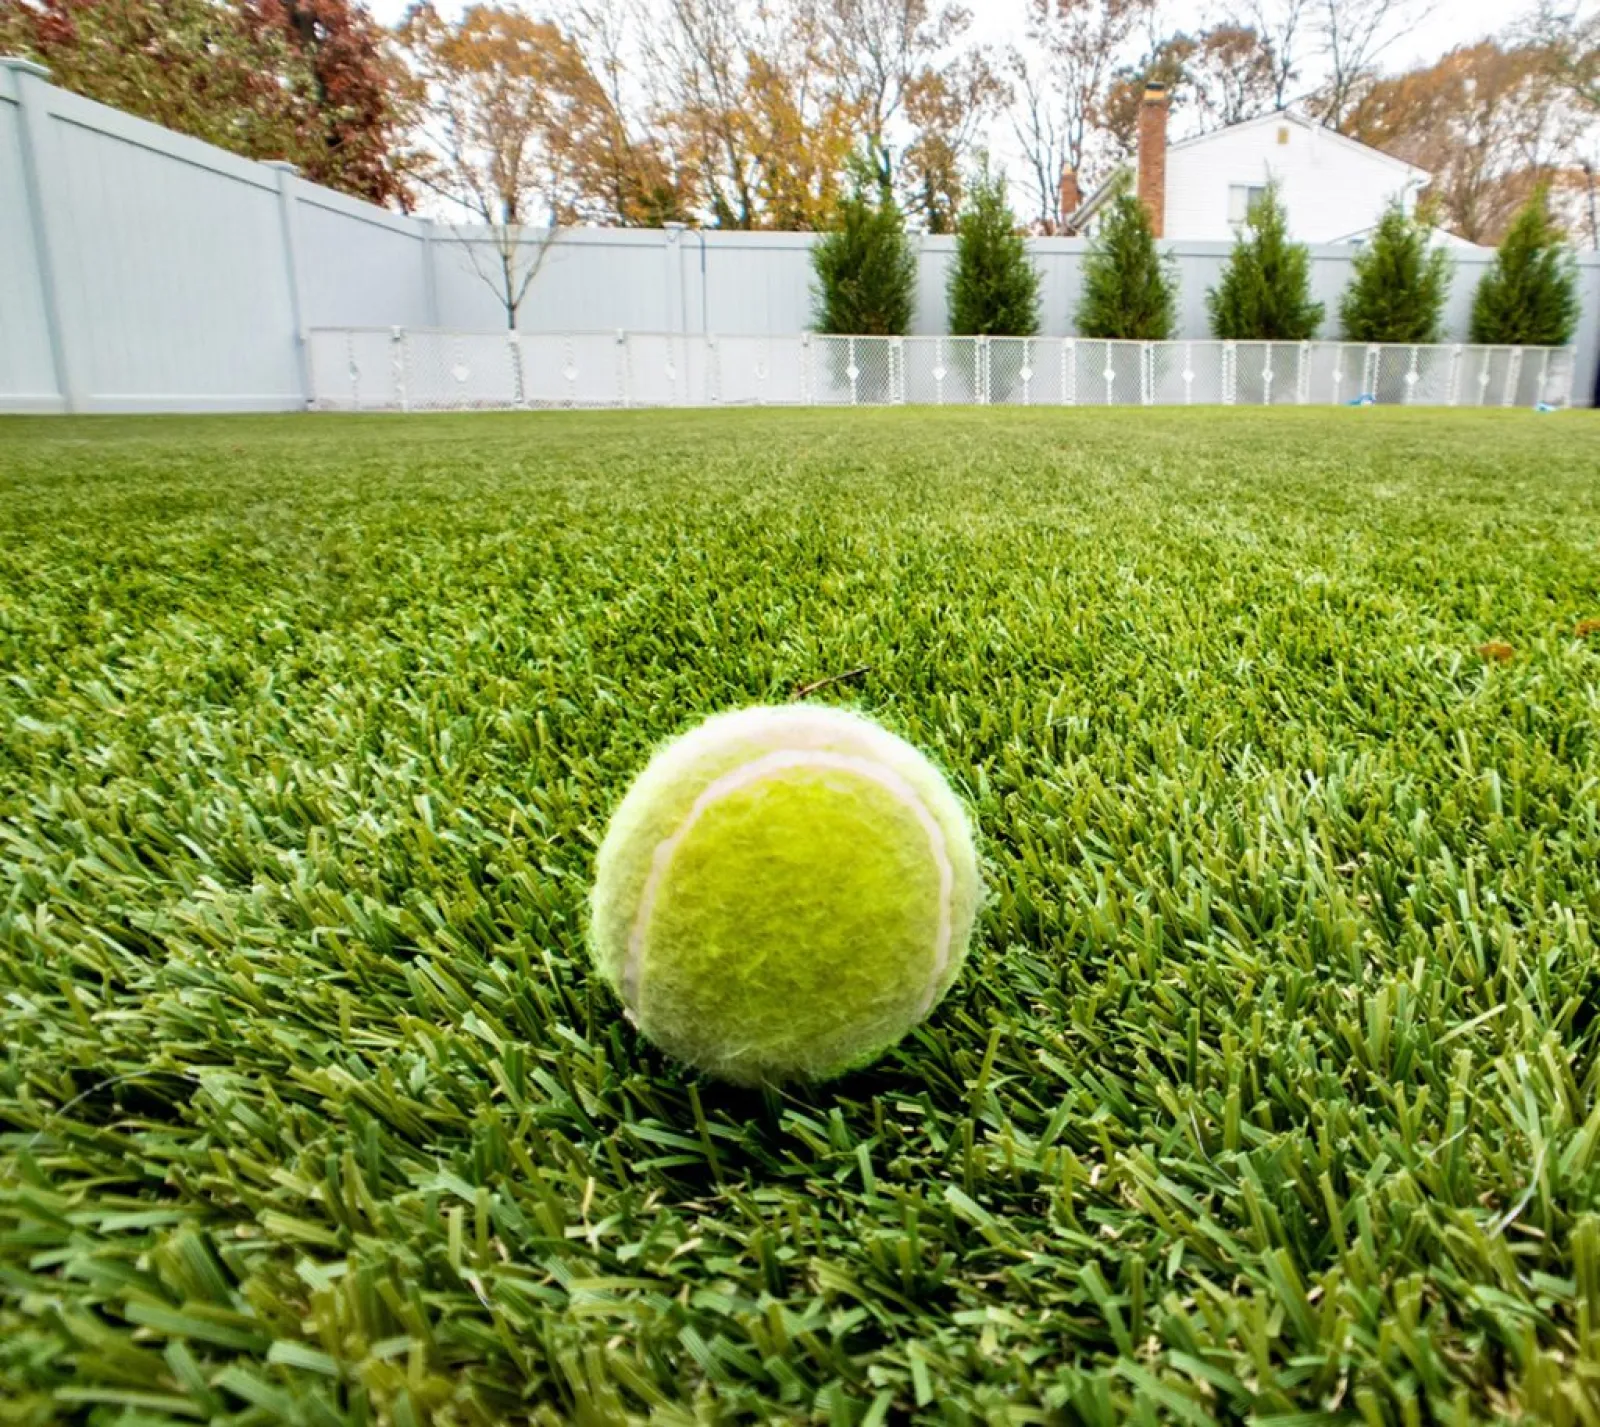 a tennis ball on the grass